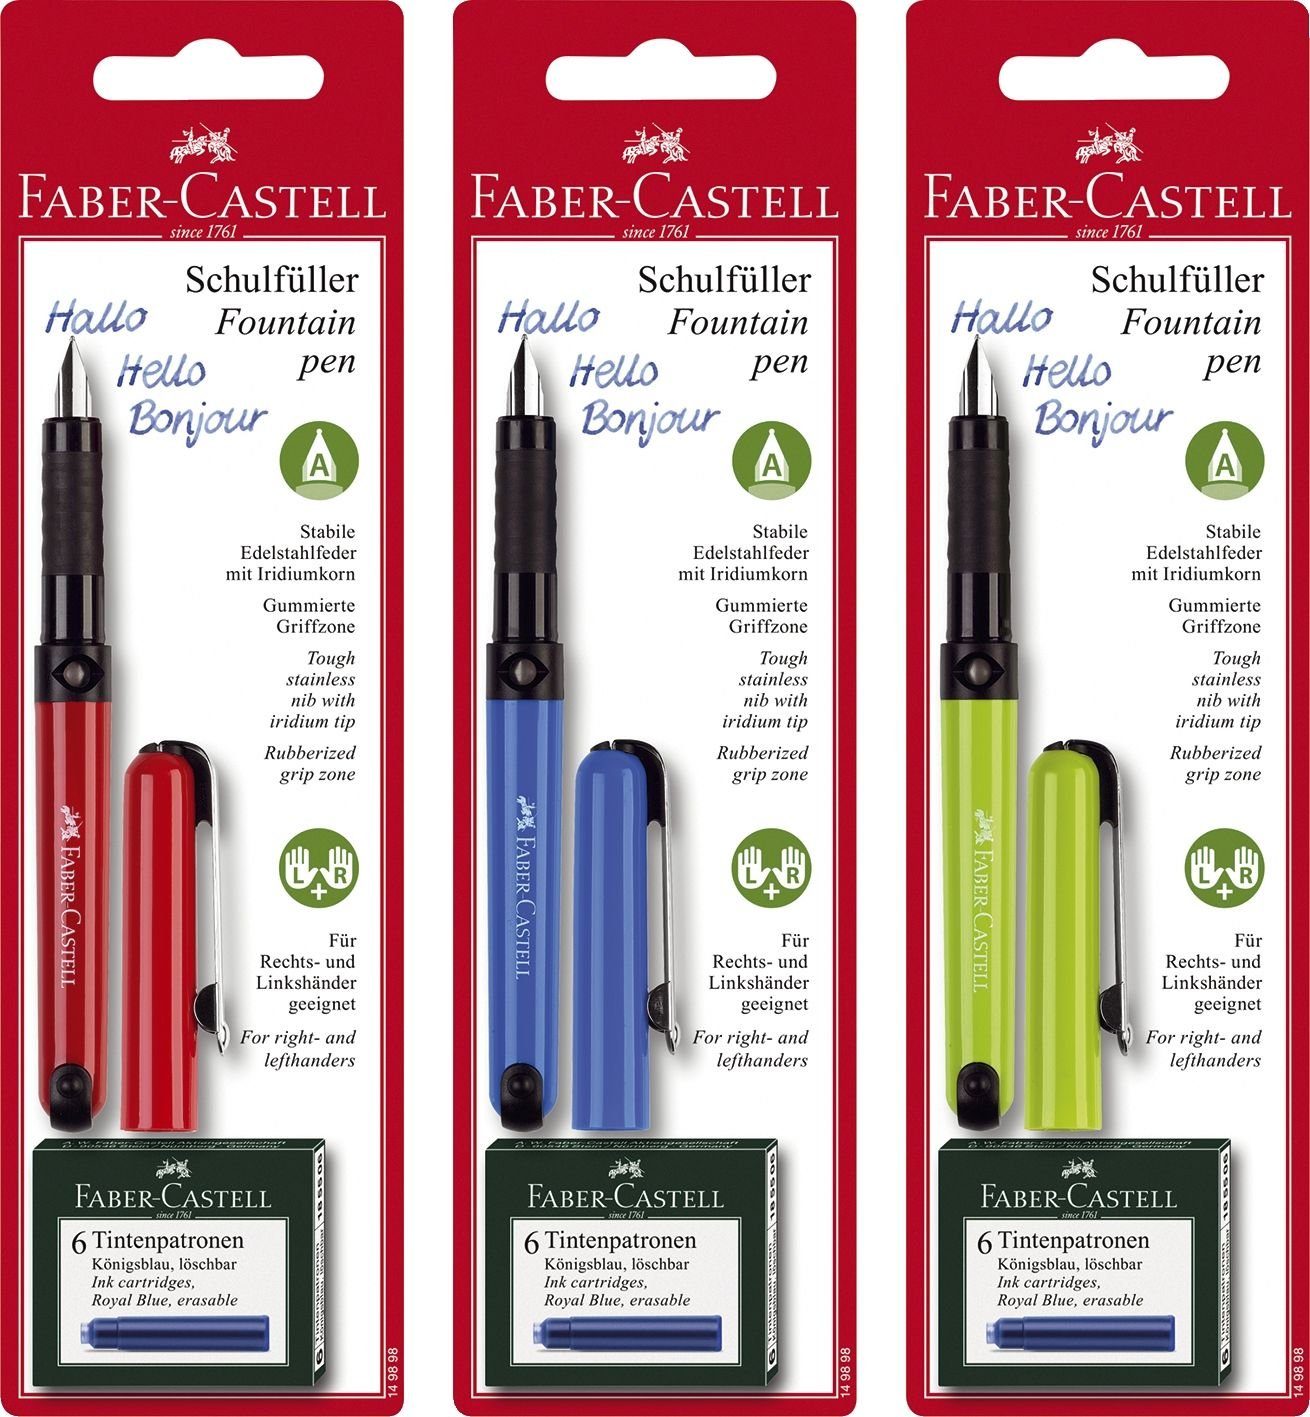 Faber-Castell Etiketten Schreiblernfüller für Rechtshänder, A-Feder, inkl. Patronen auf Bliste